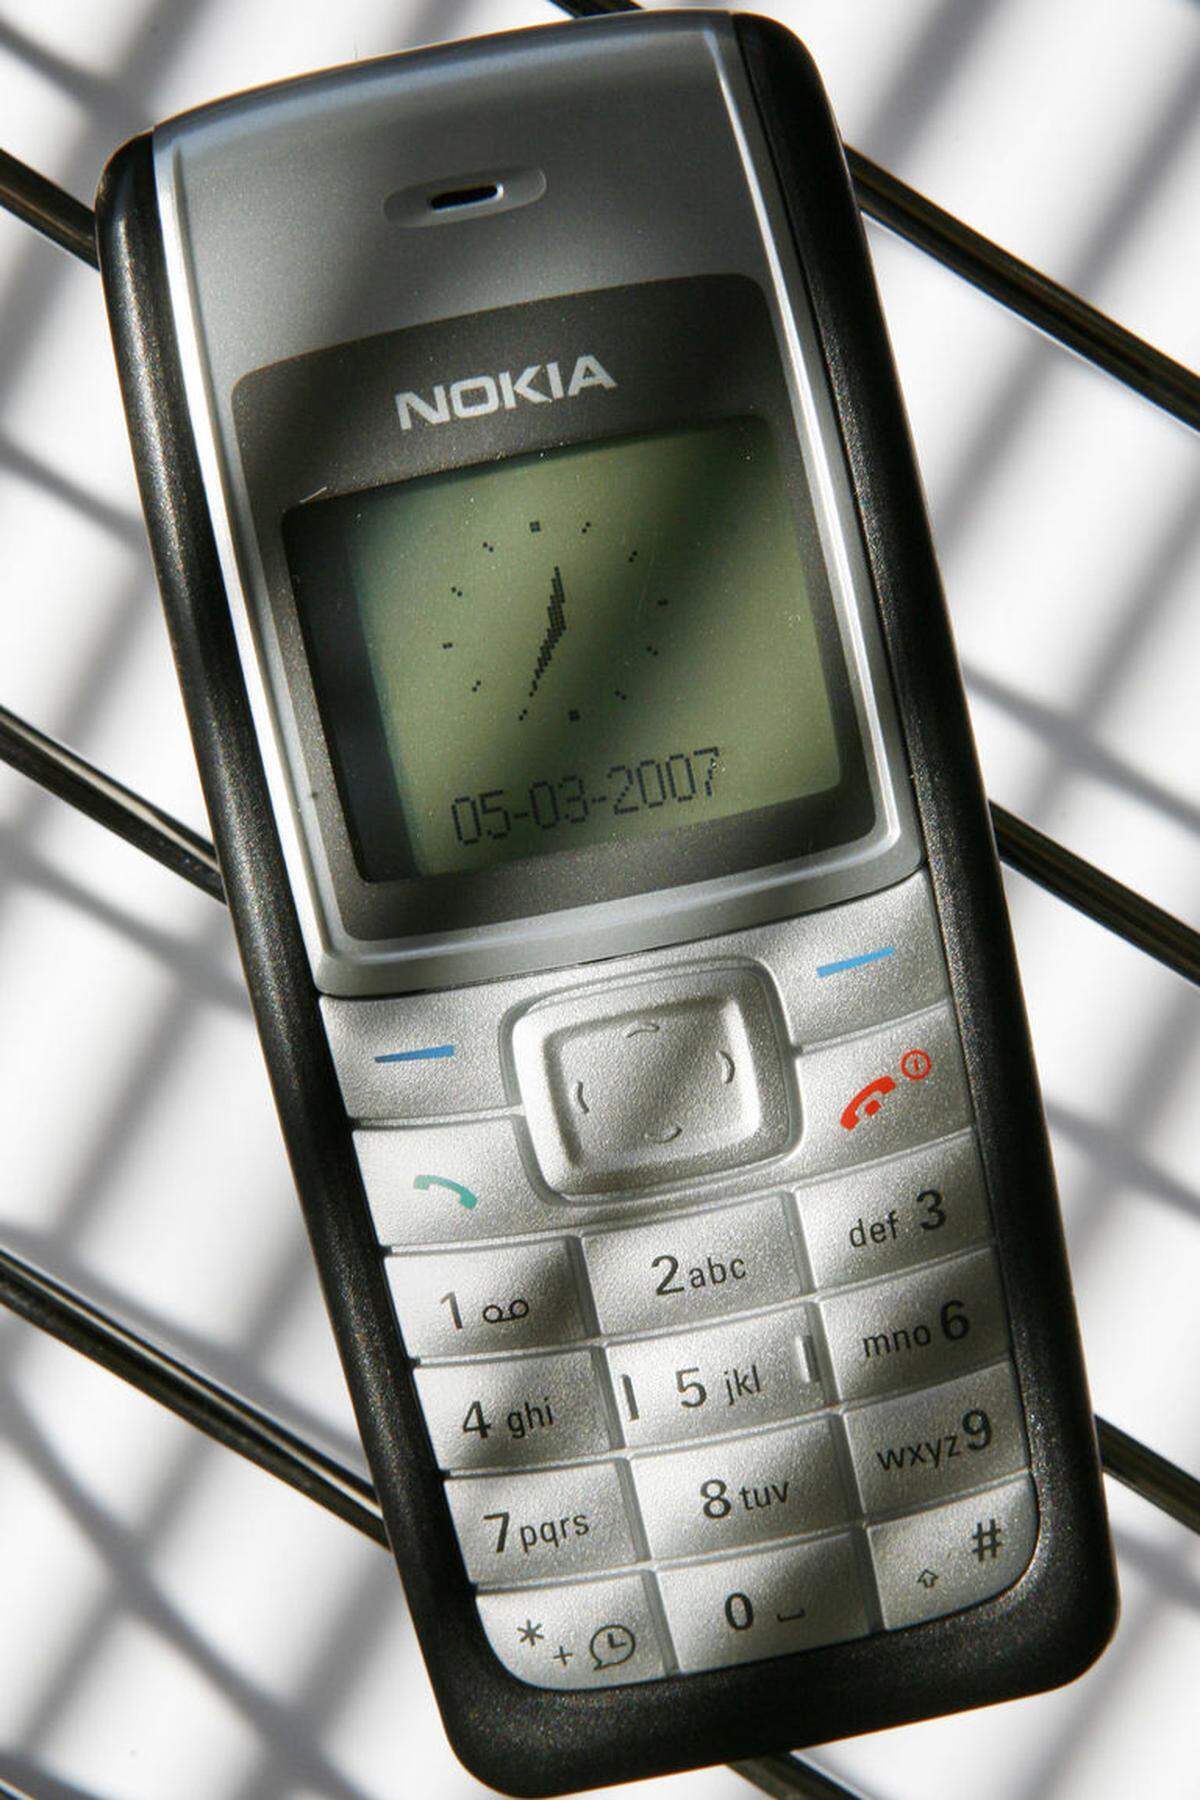 Das Nokia 1100 ist das erfolgreichste Mobiltelefon aller Zeiten. Nokia konzipierte es bewusst einfach für den Verkauf in Entwicklungsländern. Es hatte wenige Extras und galt schon 2003 als veraltet, war aber ideal für den "Outdoor"-Betrieb. 200 Millionen Mal wurde es verkauft - im Jahr 2007 sogar mit dem Rekord von 1 Million Stück pro Woche.